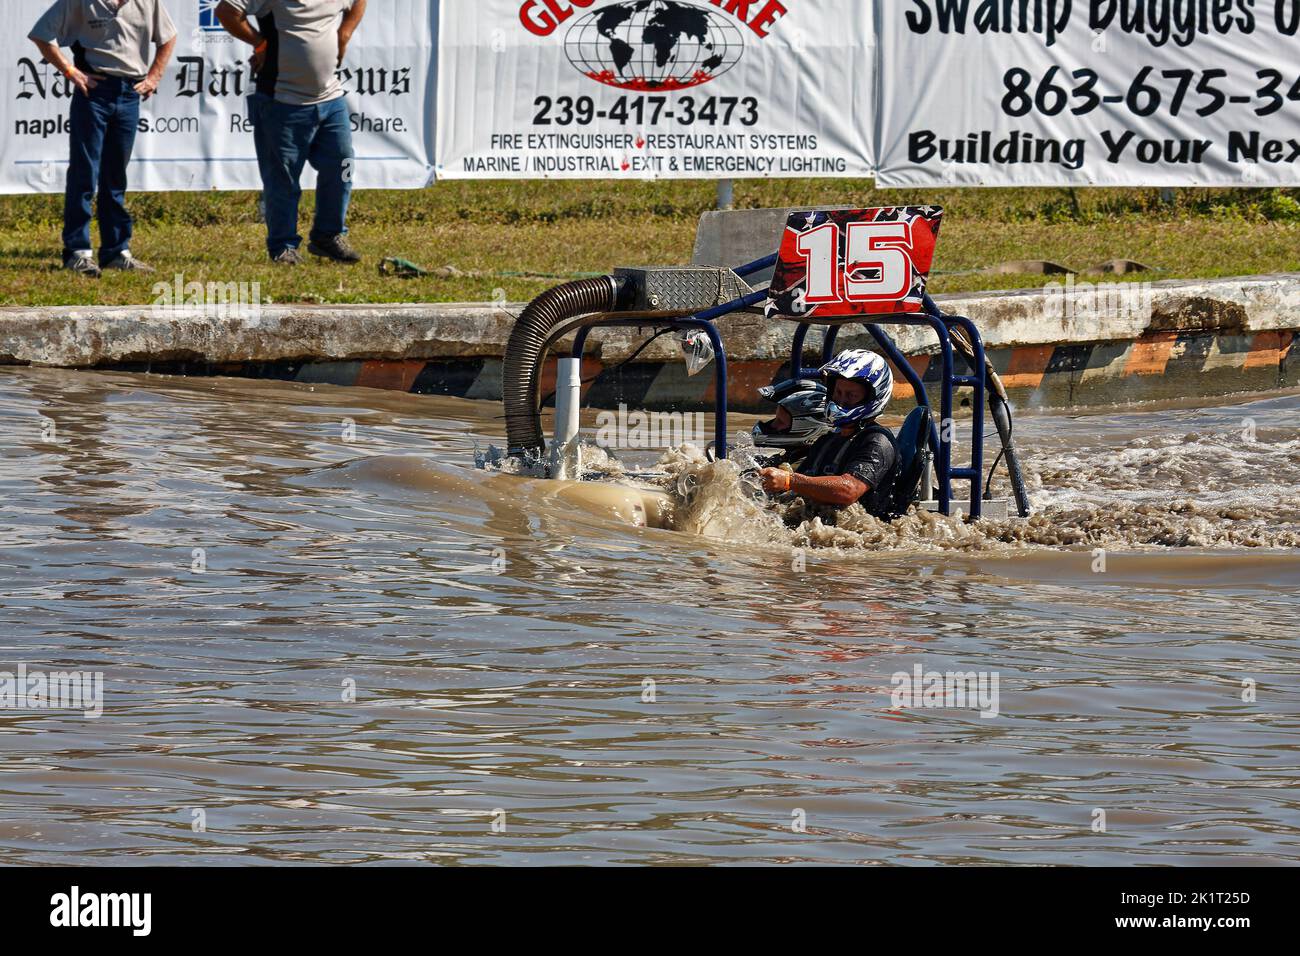 buggy de marais se déplaçant à travers l'eau, l'action, à moitié submergé, style jeep, sport de véhicule, gros plan, homme, femme, casques, bannières publicitaires, Sport de Floride Banque D'Images